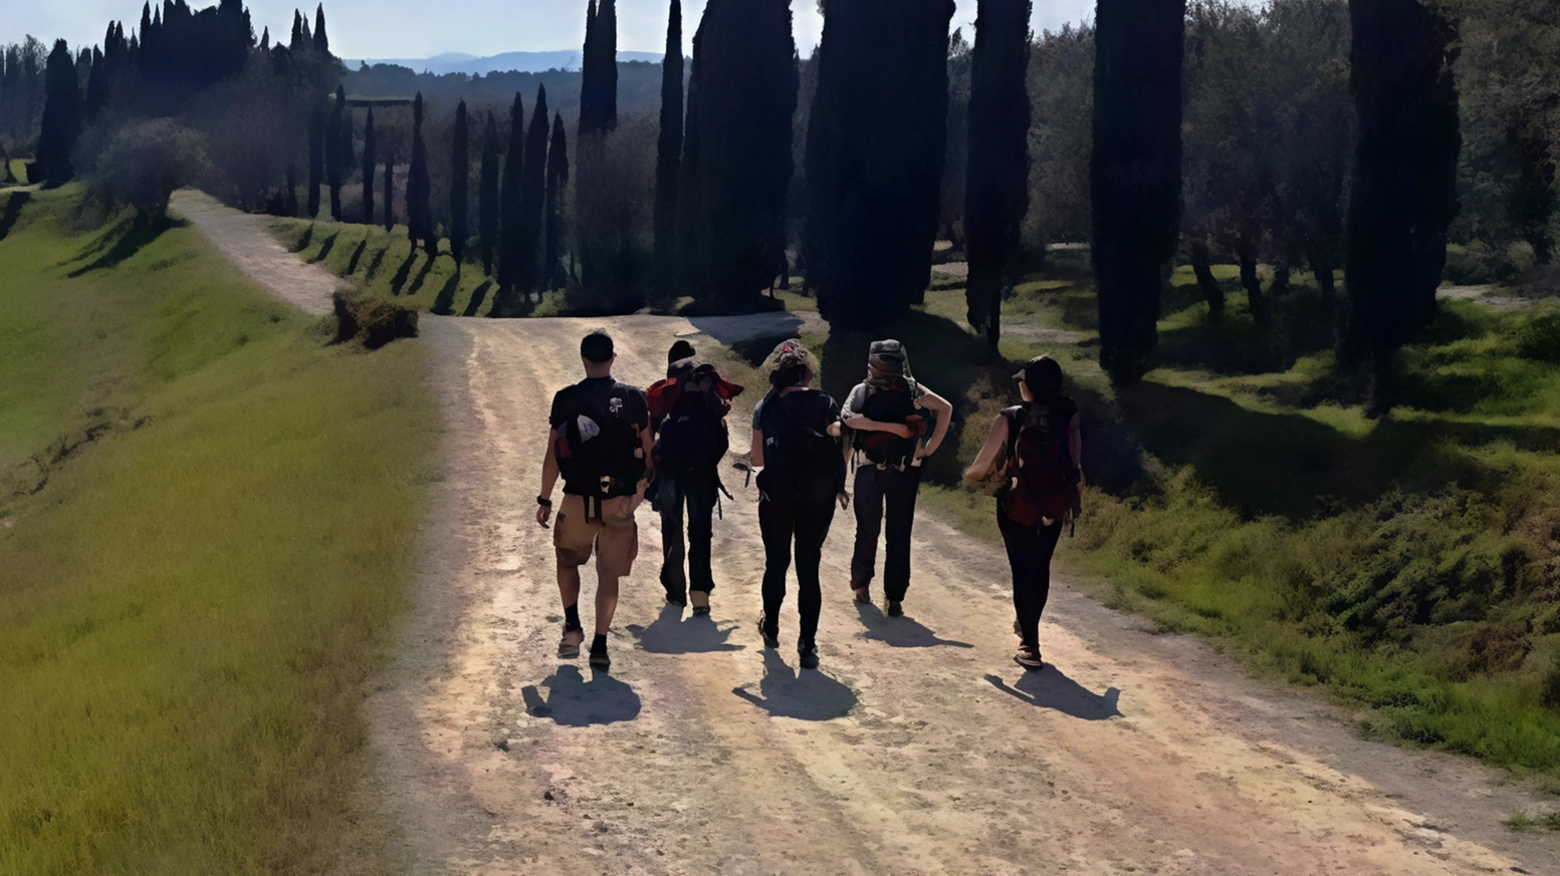 Escursione trekking sulla Via Francigena da Strove a Monteriggioni, organizzata dall'associazione sportiva "All’Aria Aperta - Walking & Fishing". Contattare Mauro per info e prenotazioni.